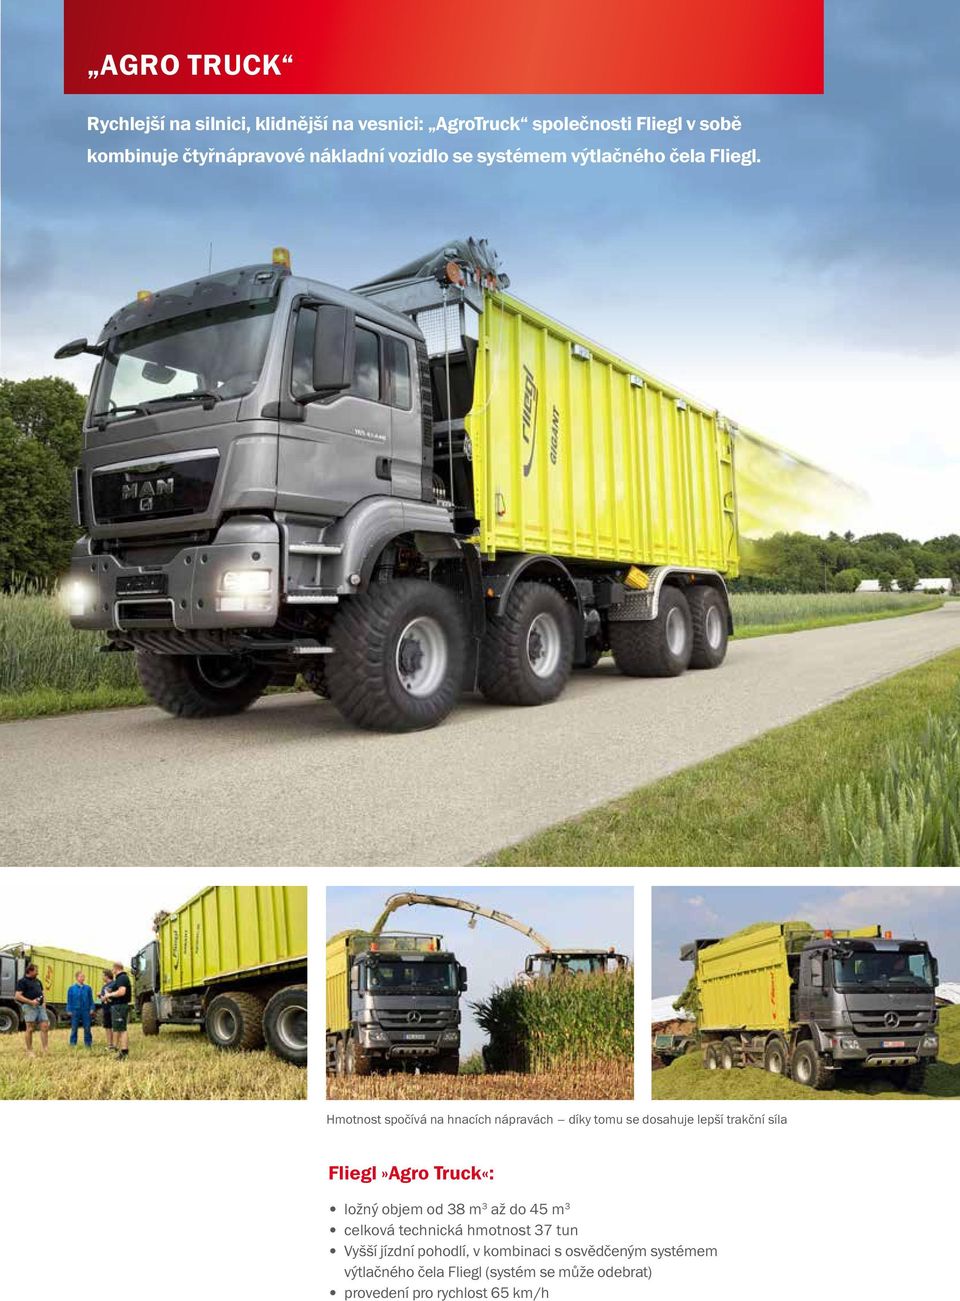 Hmotnost spočívá na hnacích nápravách díky tomu se dosahuje lepší trakční síla Fliegl»Agro Truck«: ložný objem od 38